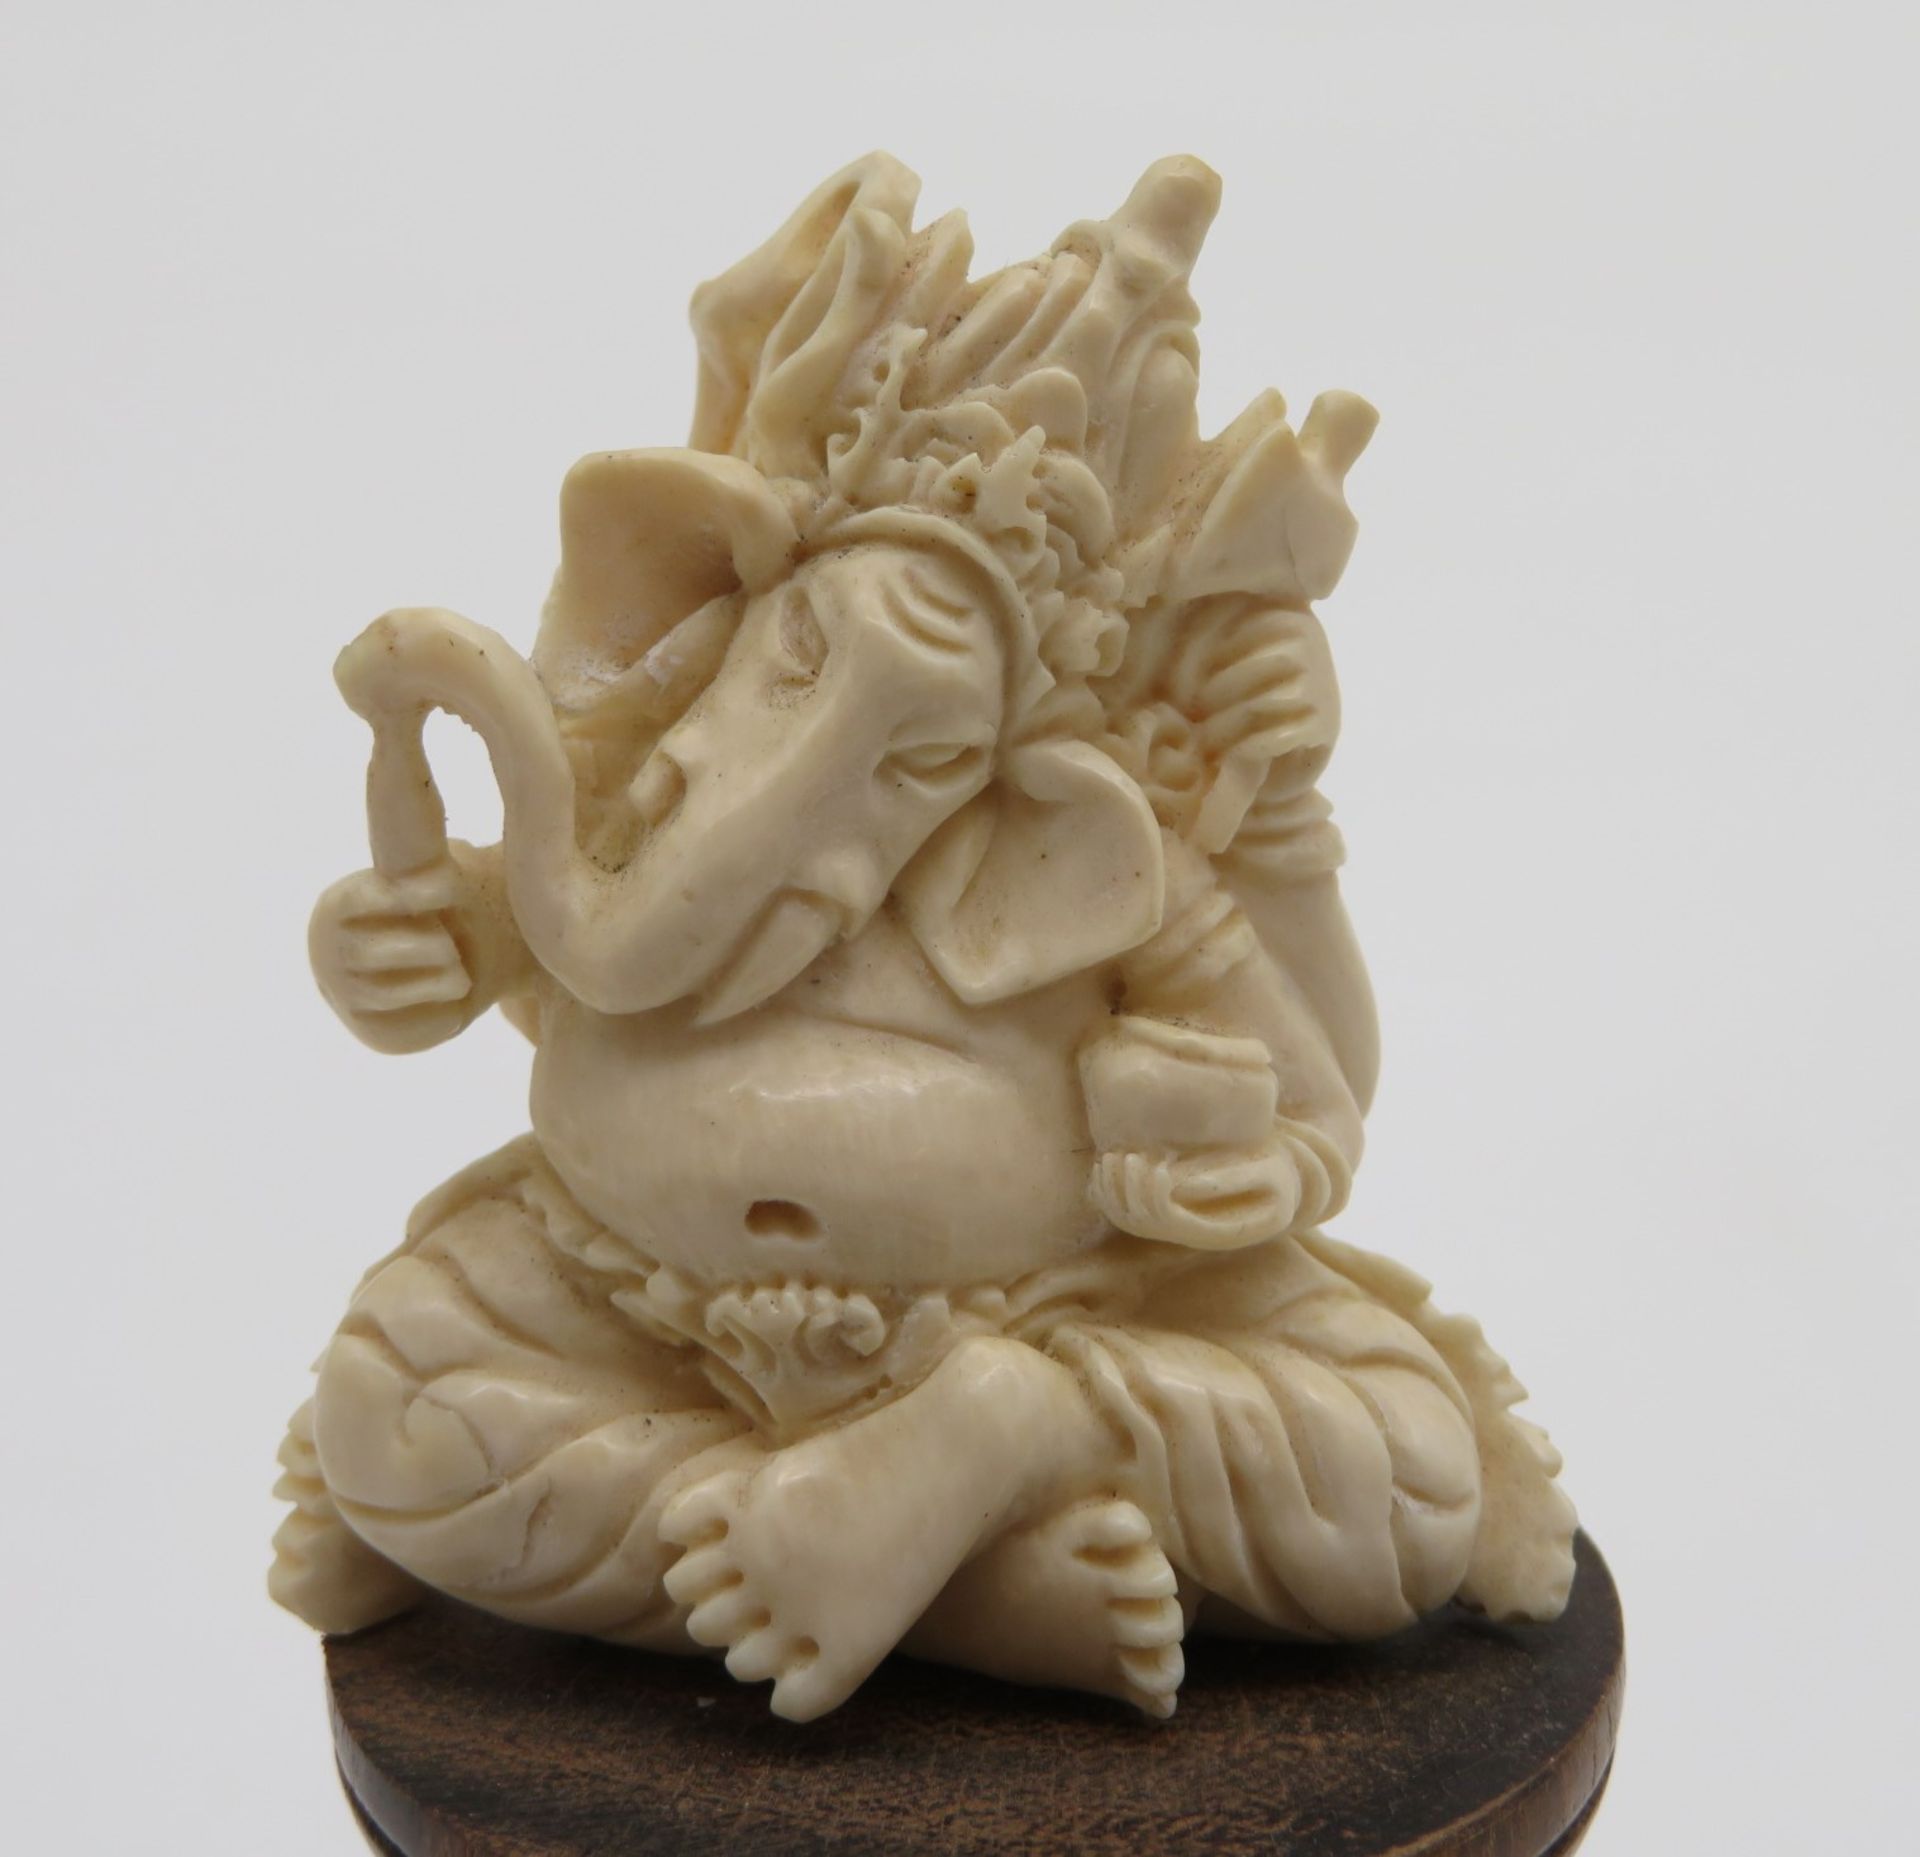 Sitzender Elefantengott Ganesha mit diversen Attributen, Bein feinst geschnitzt, Holzsockel (h 3,5 